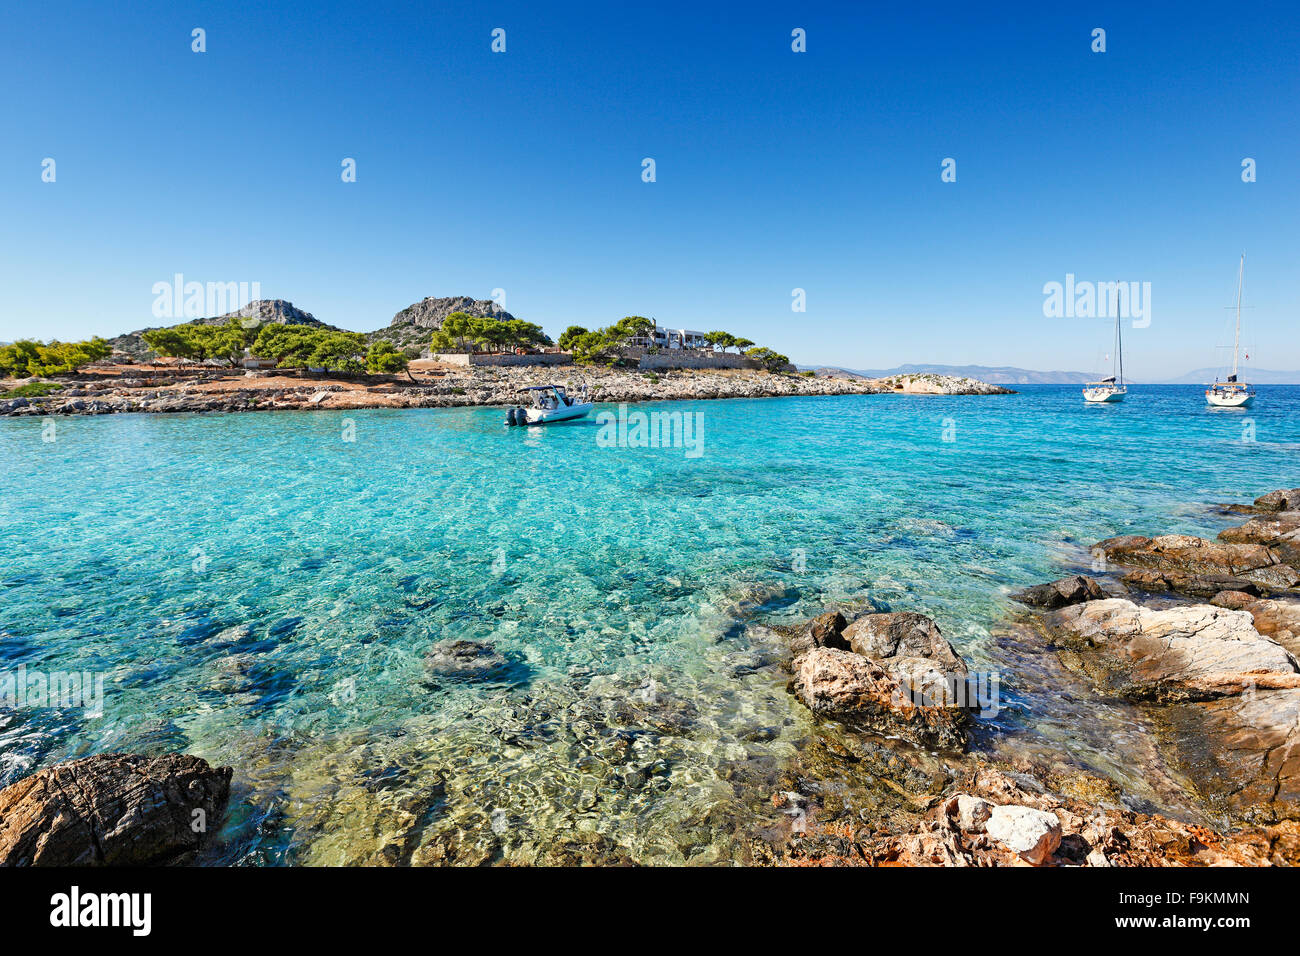 La petite île près de l'île d'Agistri Aponisos, Grèce Banque D'Images